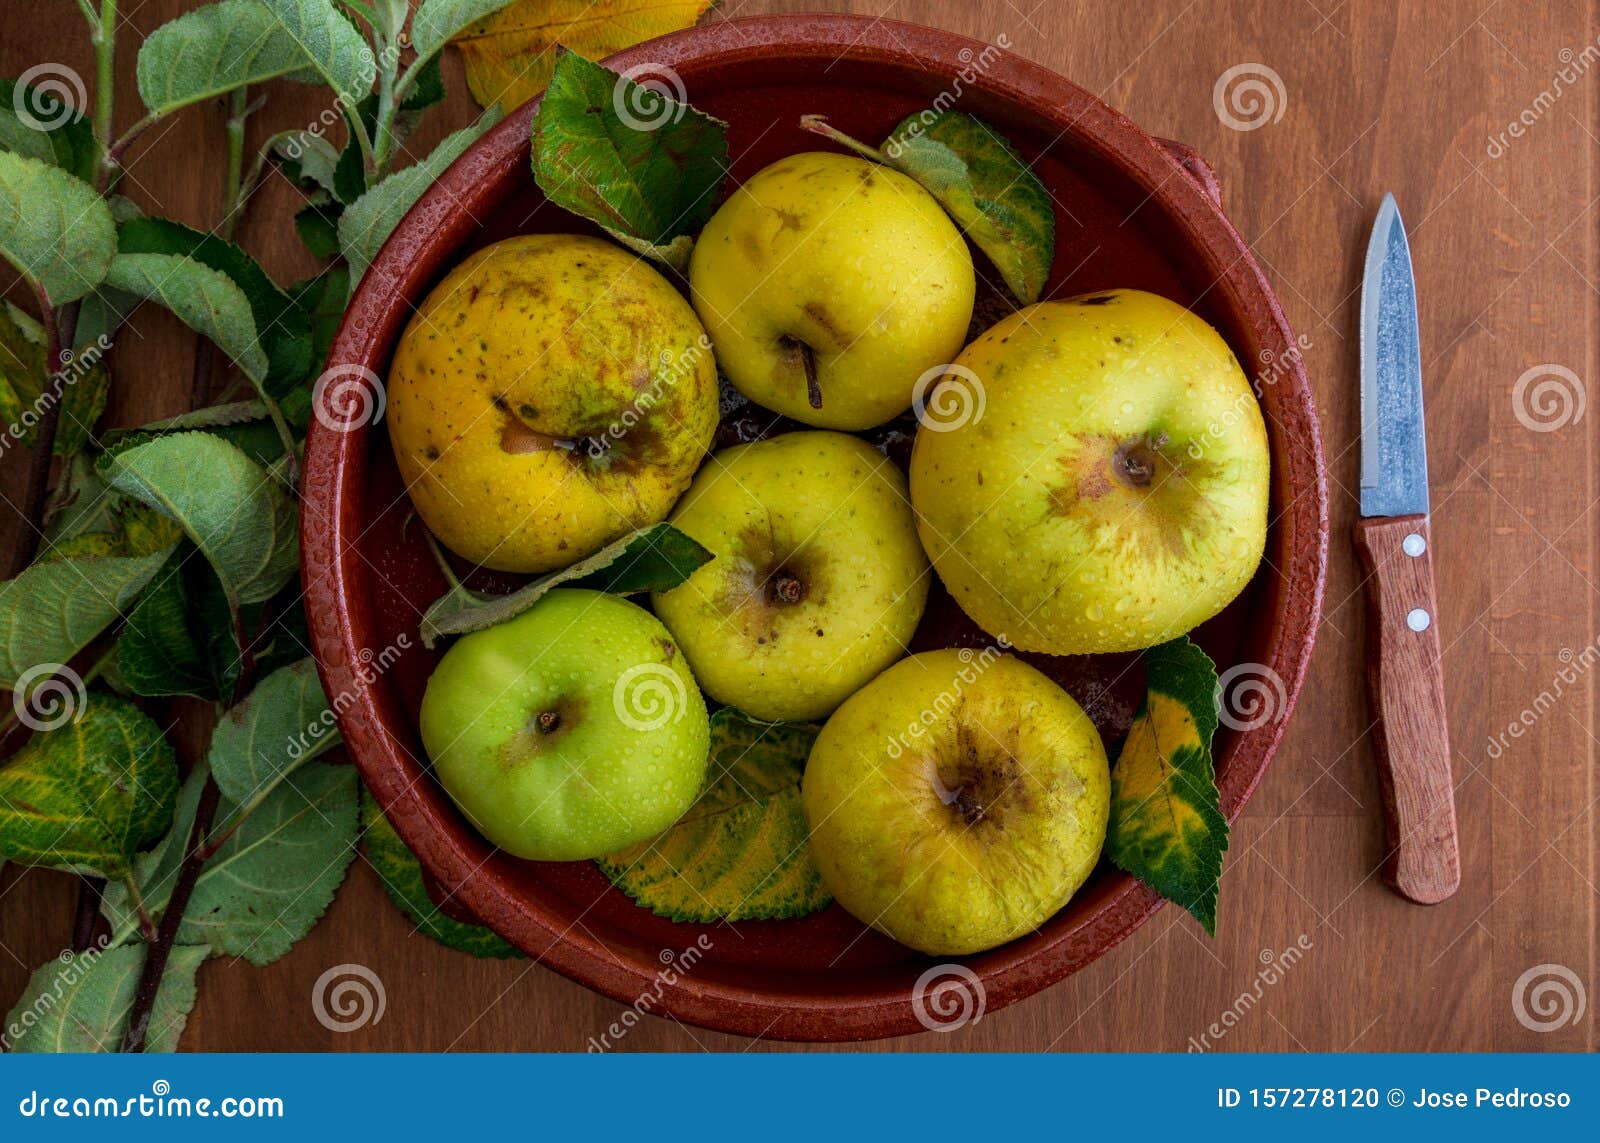 manzanas amarillas reinetas frescas, crudas y maduras. con hojas sobre sobre fondo de madera.